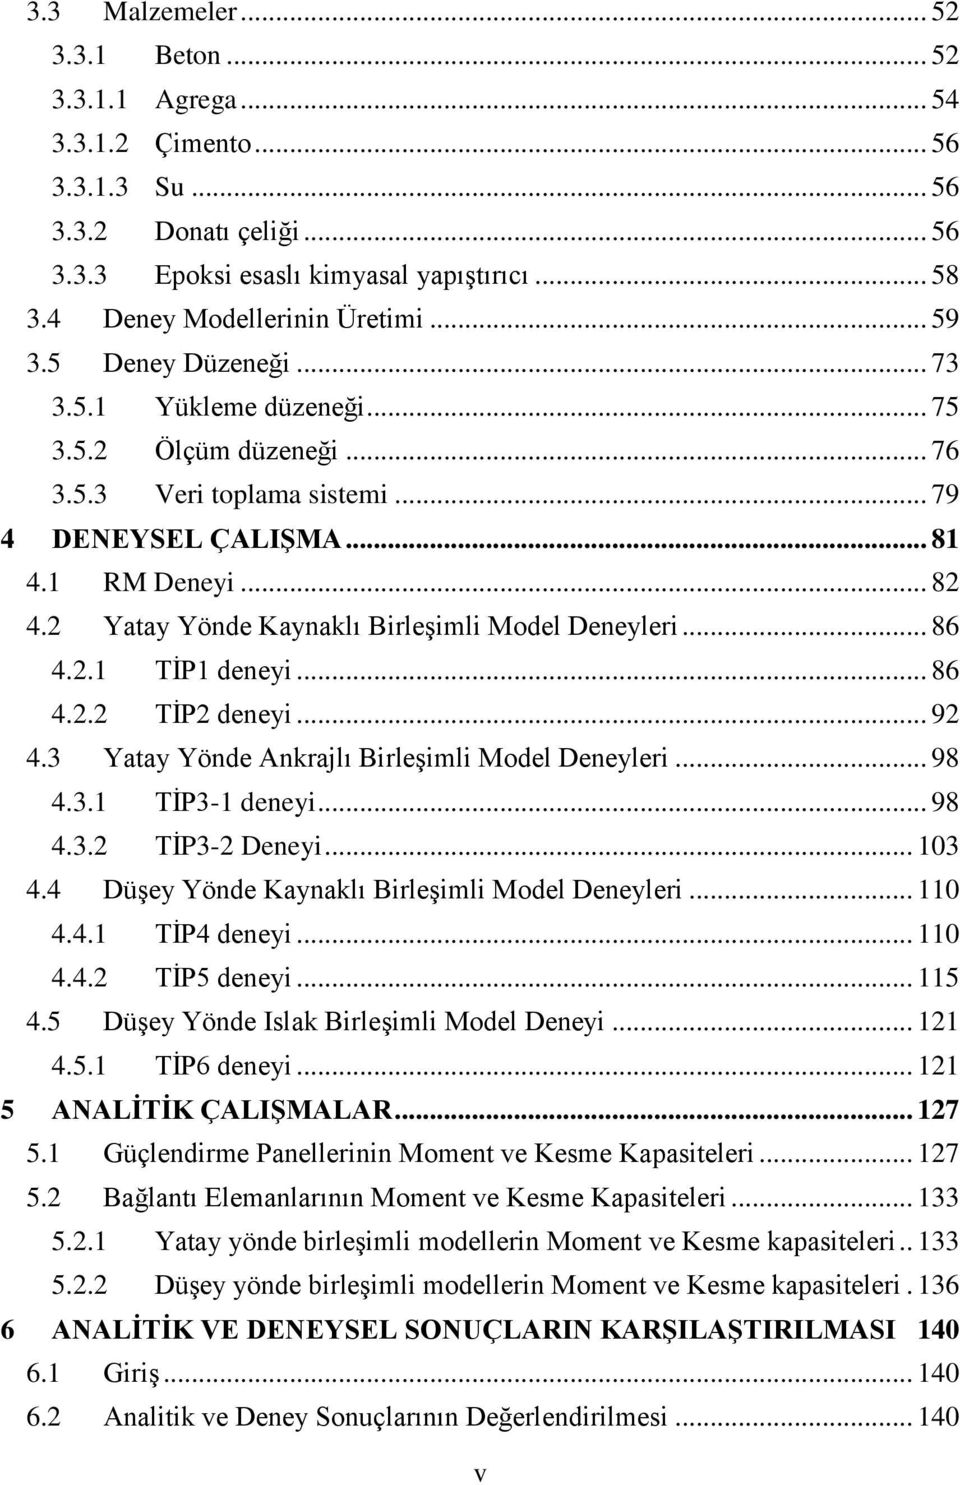 2 Yatay Yönde Kaynaklı Birleşimli Model Deneyleri... 86 4.2.1 TİP1 deneyi... 86 4.2.2 TİP2 deneyi... 92 4.3 Yatay Yönde Ankrajlı Birleşimli Model Deneyleri... 98 4.3.1 TİP3-1 deneyi... 98 4.3.2 TİP3-2 Deneyi.